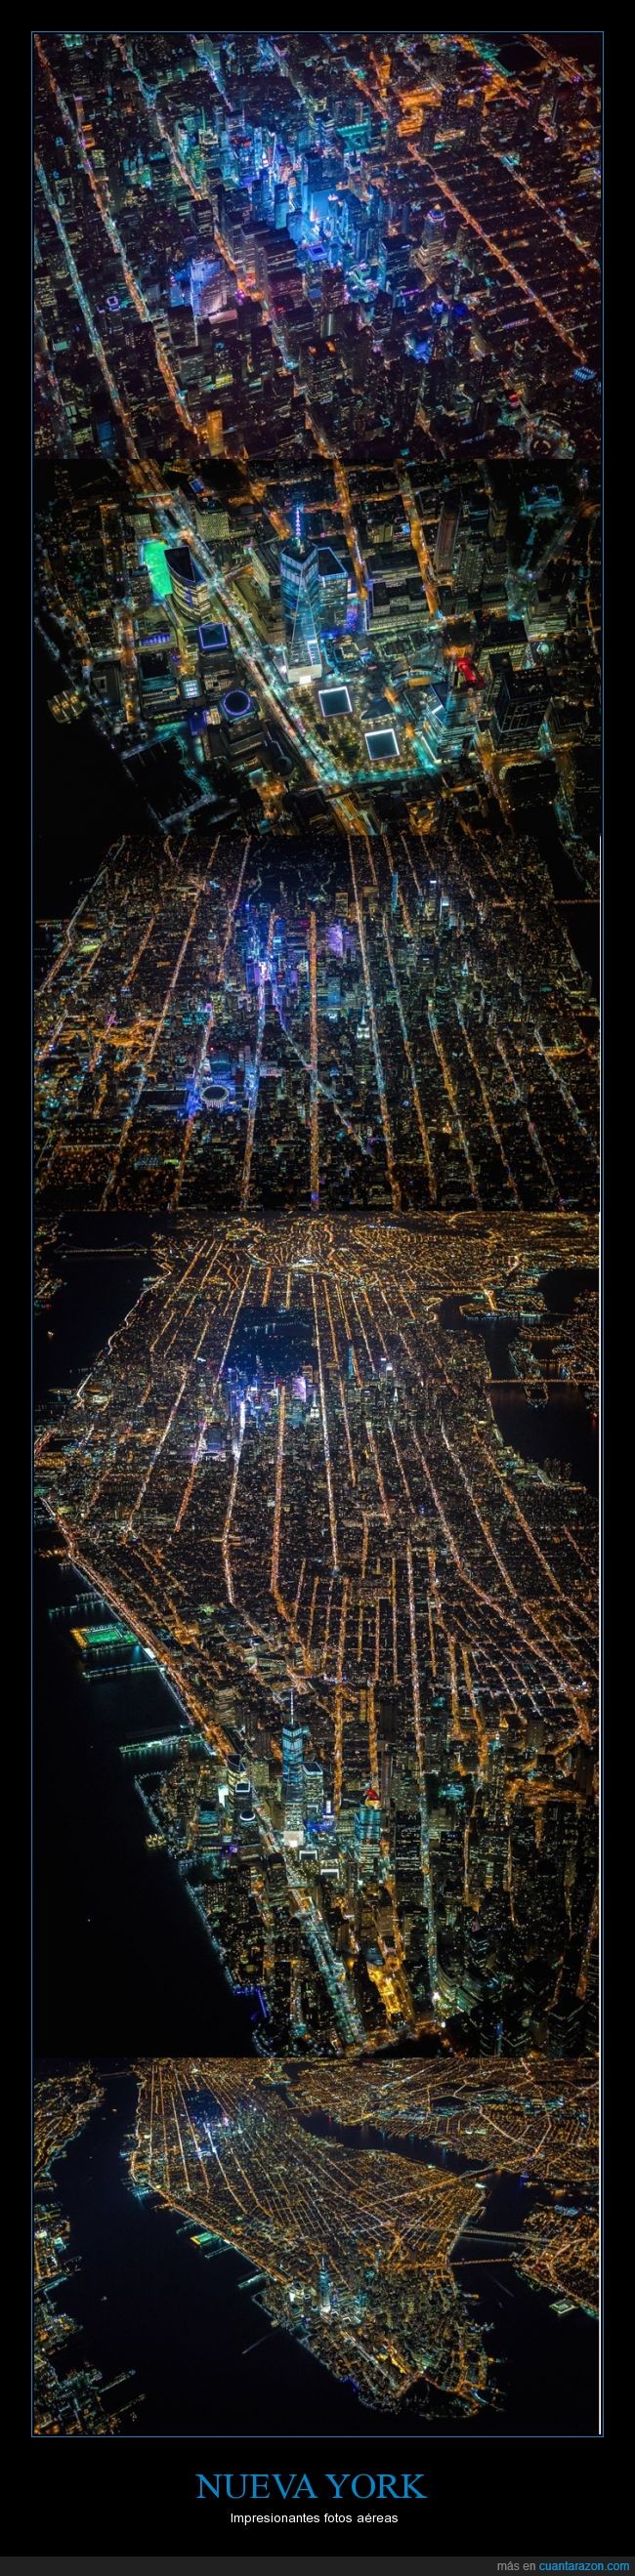 luz,Nueva york,aereas,impresionante,Fotos,nocturna,noche,ciudad,NY